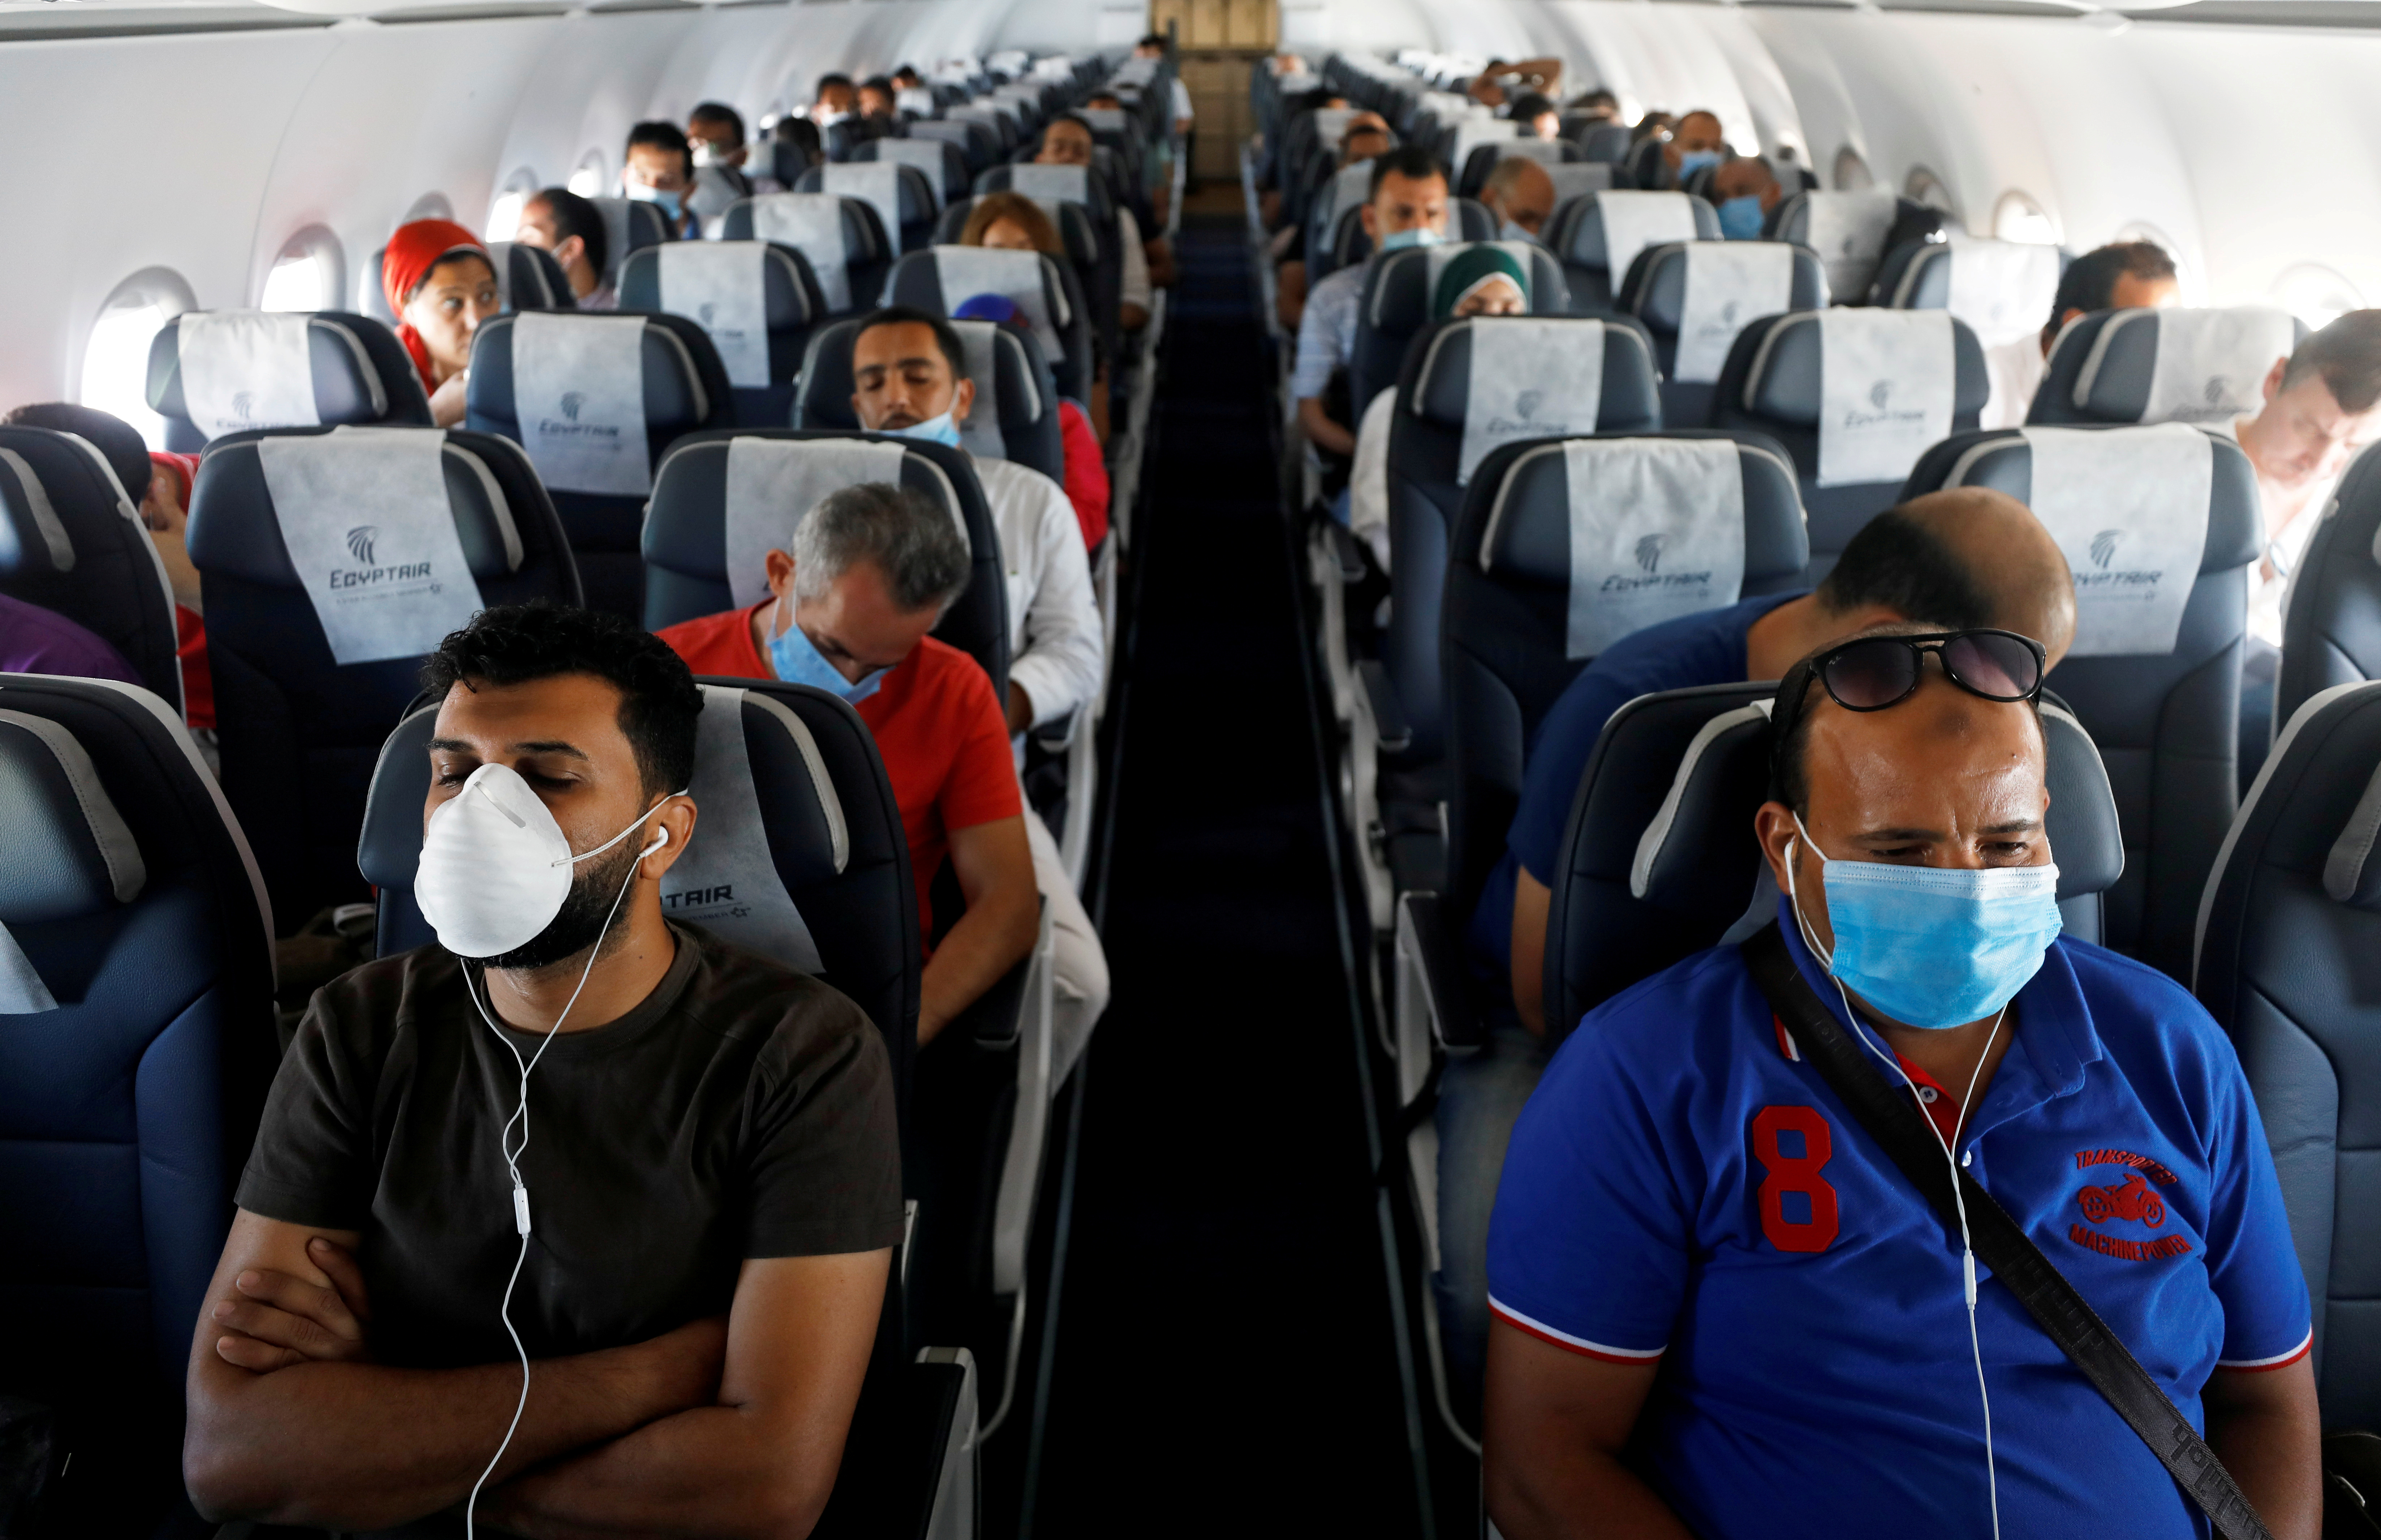 Los investigadores encontraron que hablar con menos frecuencia y usar máscaras disminuye el riesgo de infección de los pasajeros (REUTERS)